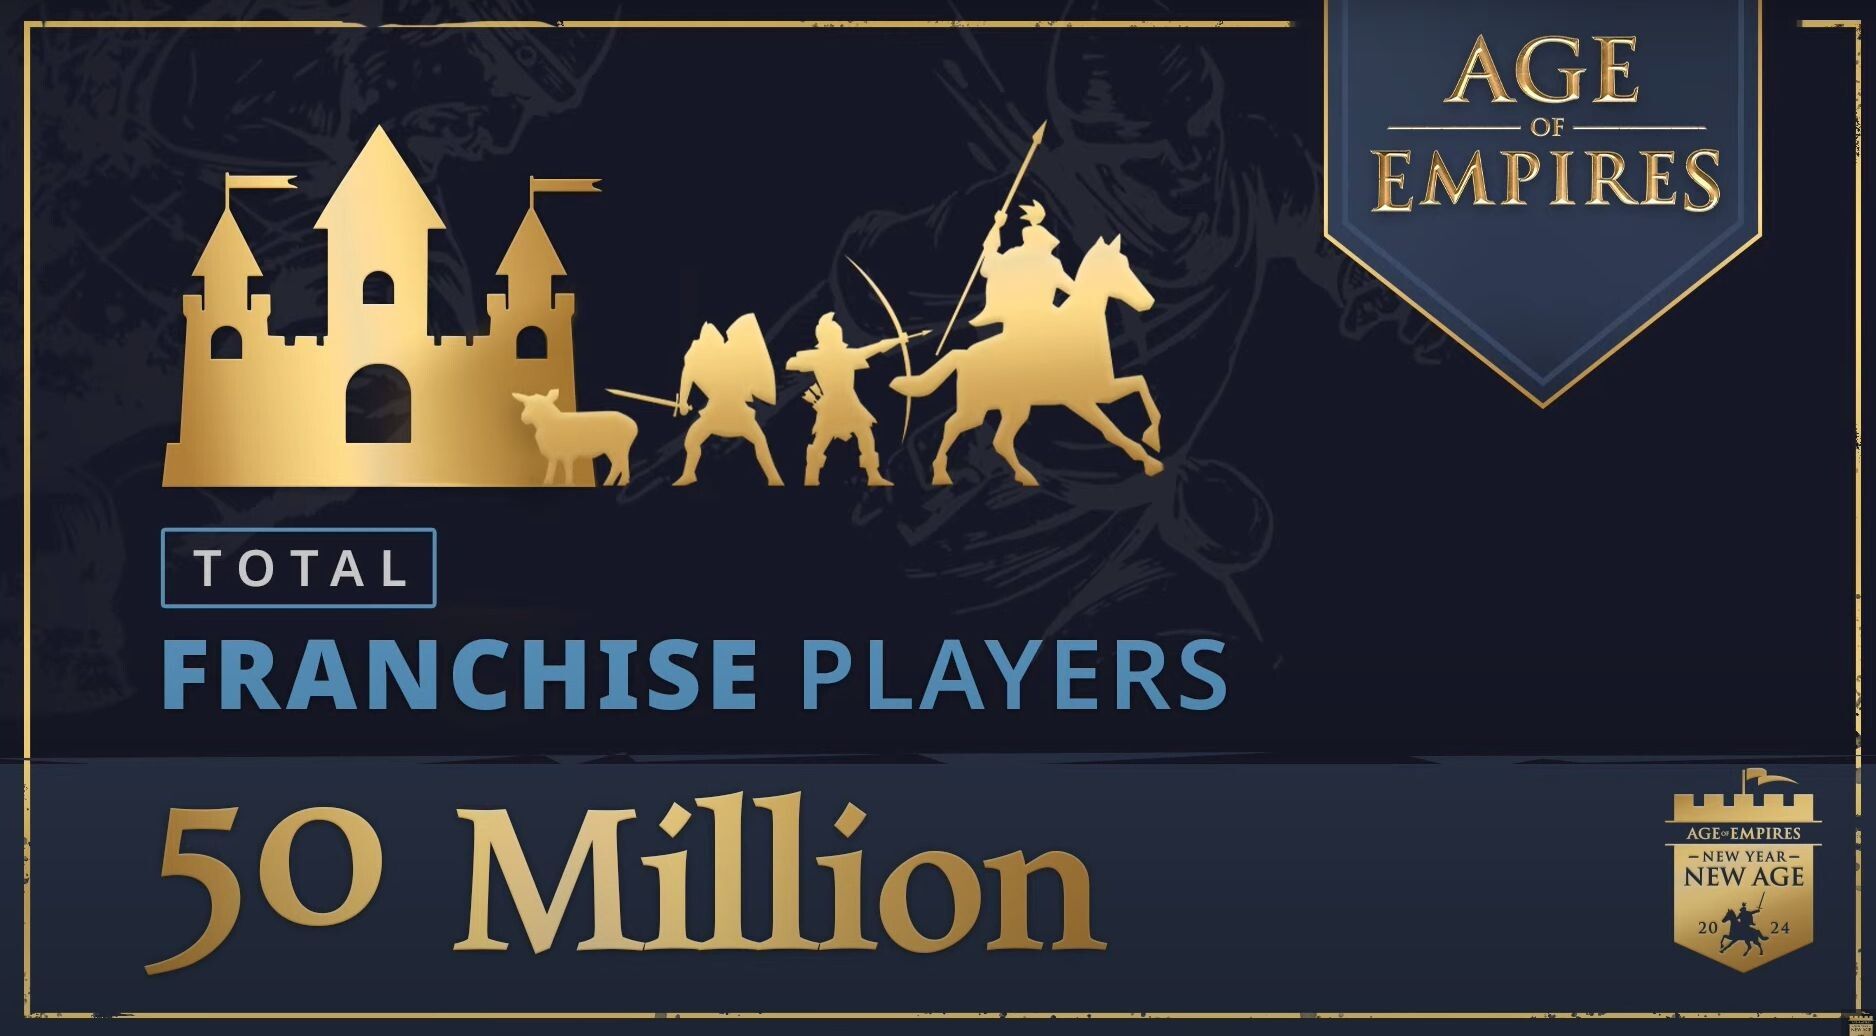 微软宣布《帝国时代》系列游戏玩家总数突破 5000 万大关